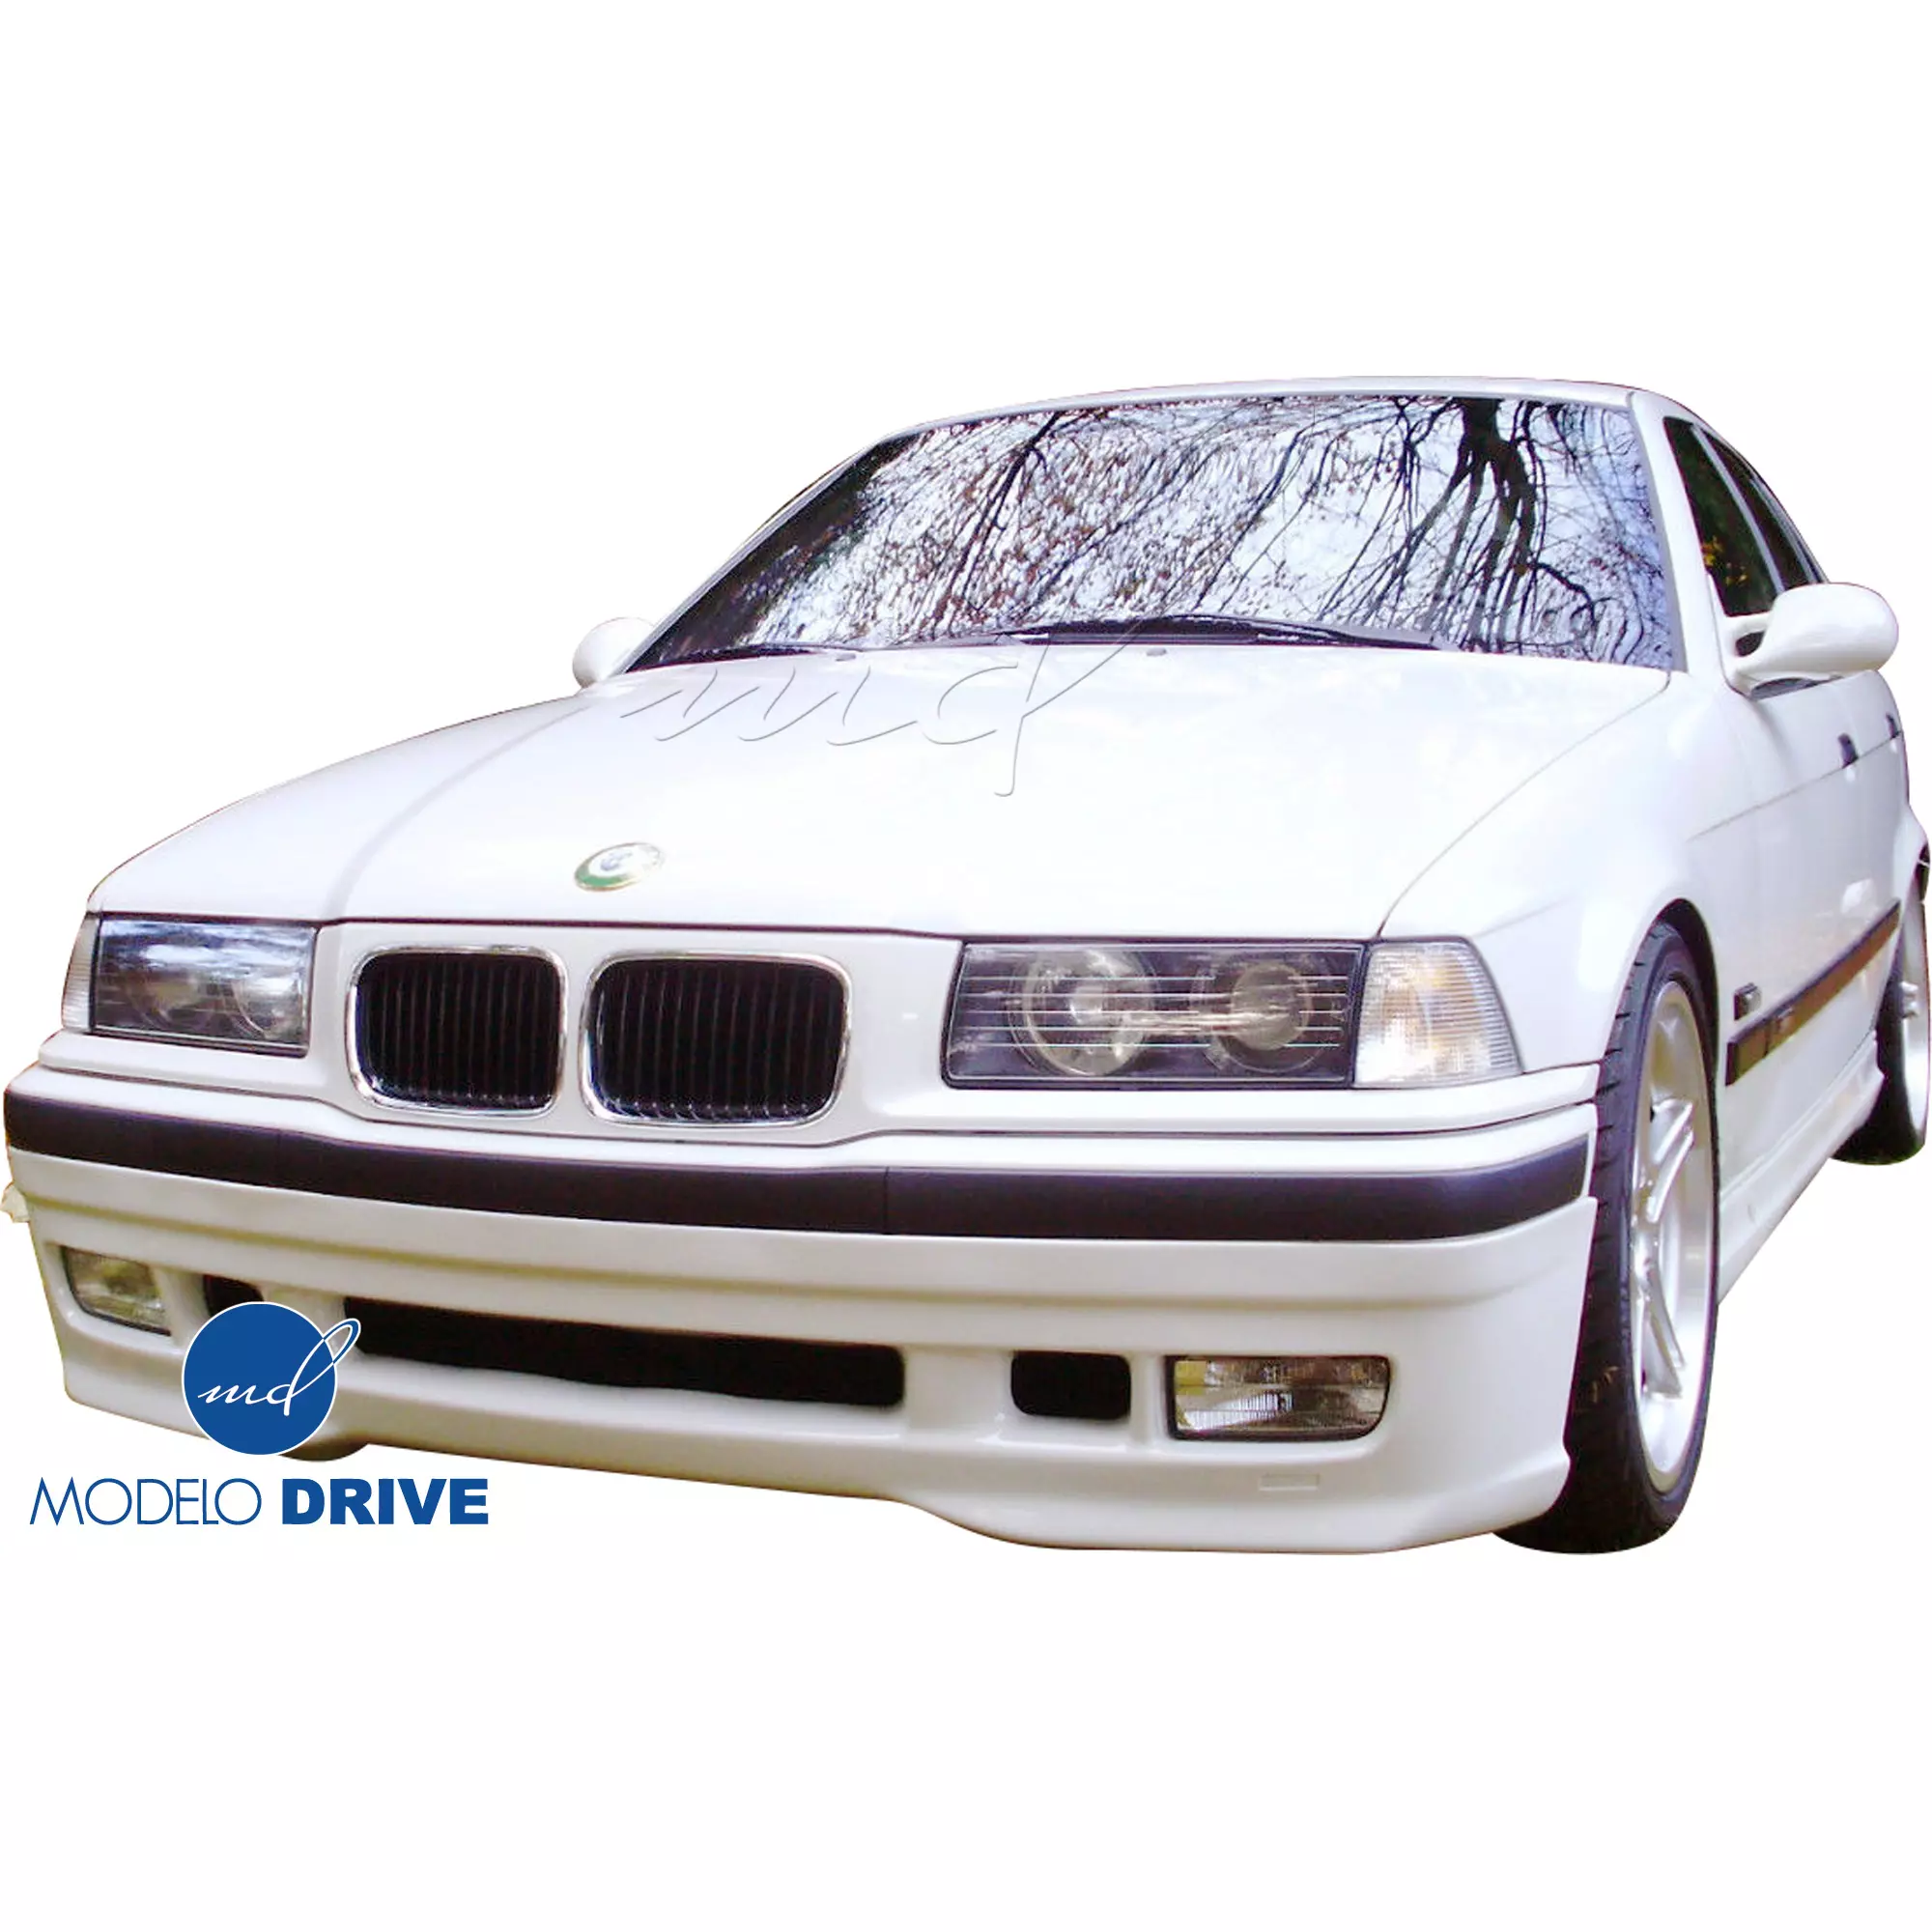 ModeloDrive FRP RDYN Body Kit 4pc > BMW 3-Series E36 1992-1998 > 2/4dr - Image 3